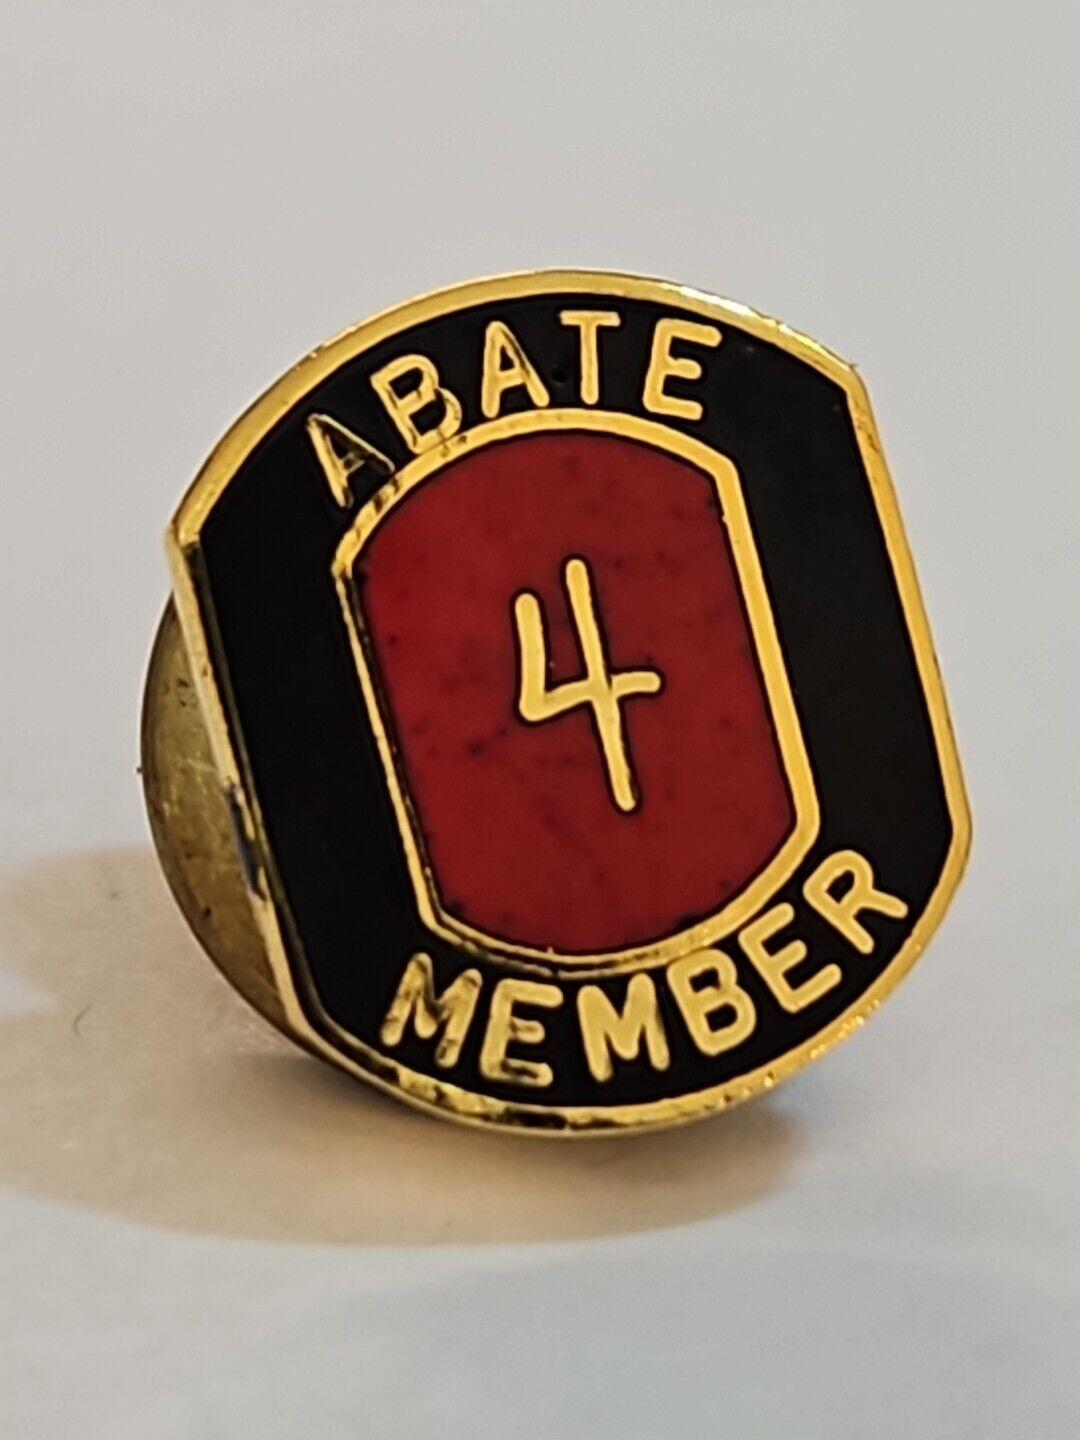 ABATE 4 Year Member Motorcycle Hat Lapel Pin